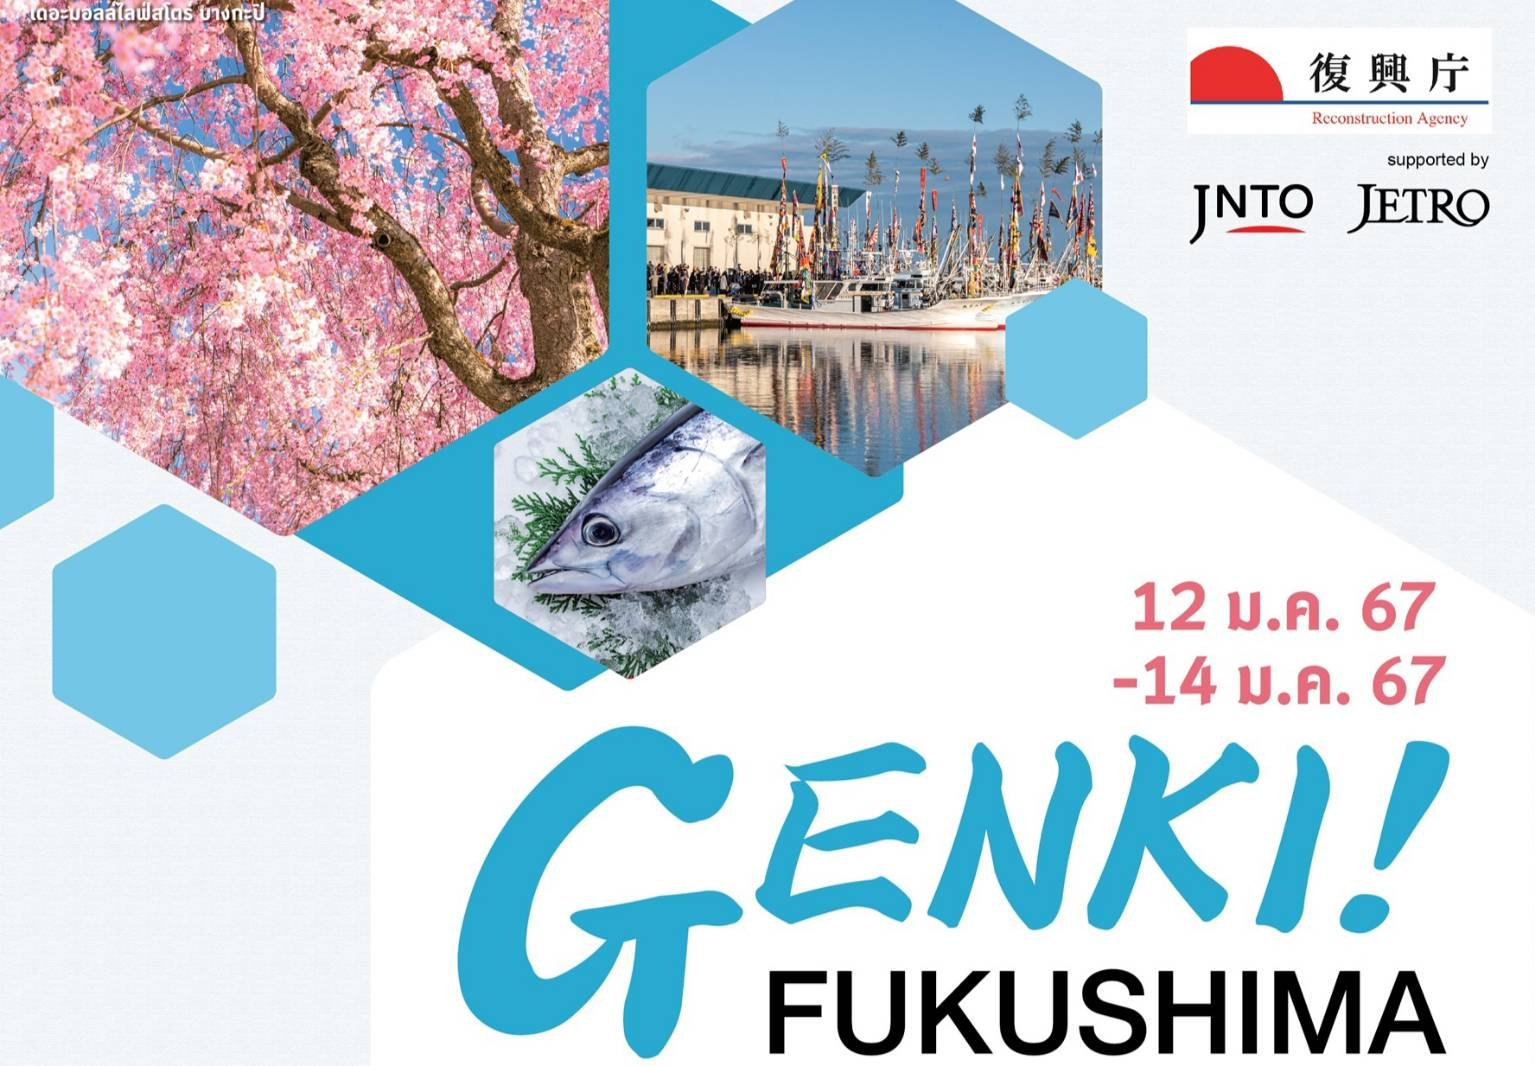 สัมผัสมนต์เสน่ห์จังหวัดฟุกุชิมะ ประเทศญี่ปุ่น ในงาน “GENKI! FUKUSHIMA”